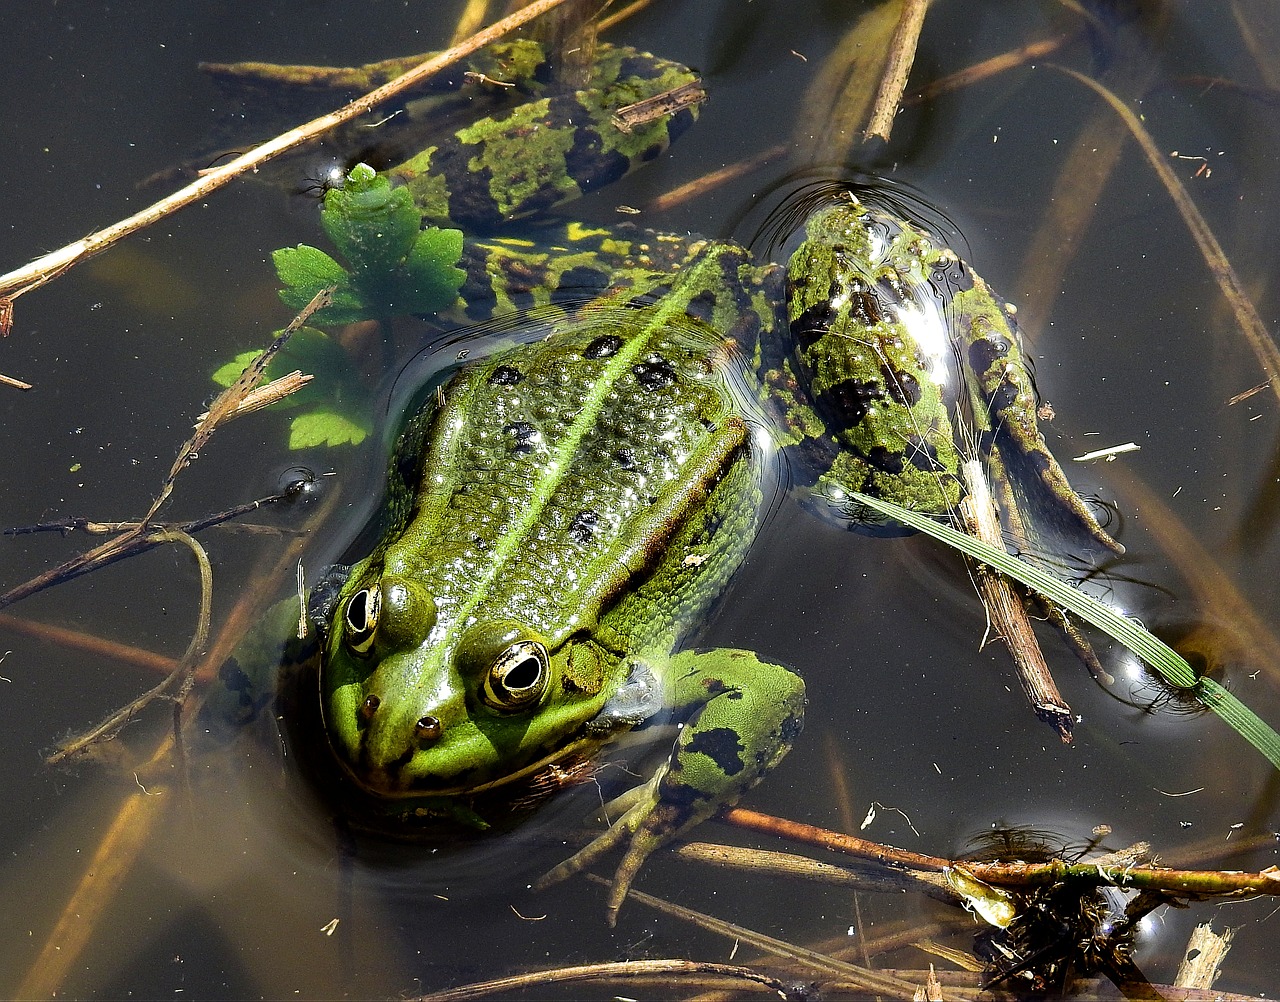 amphibians bezogonowe  frog  nature free photo